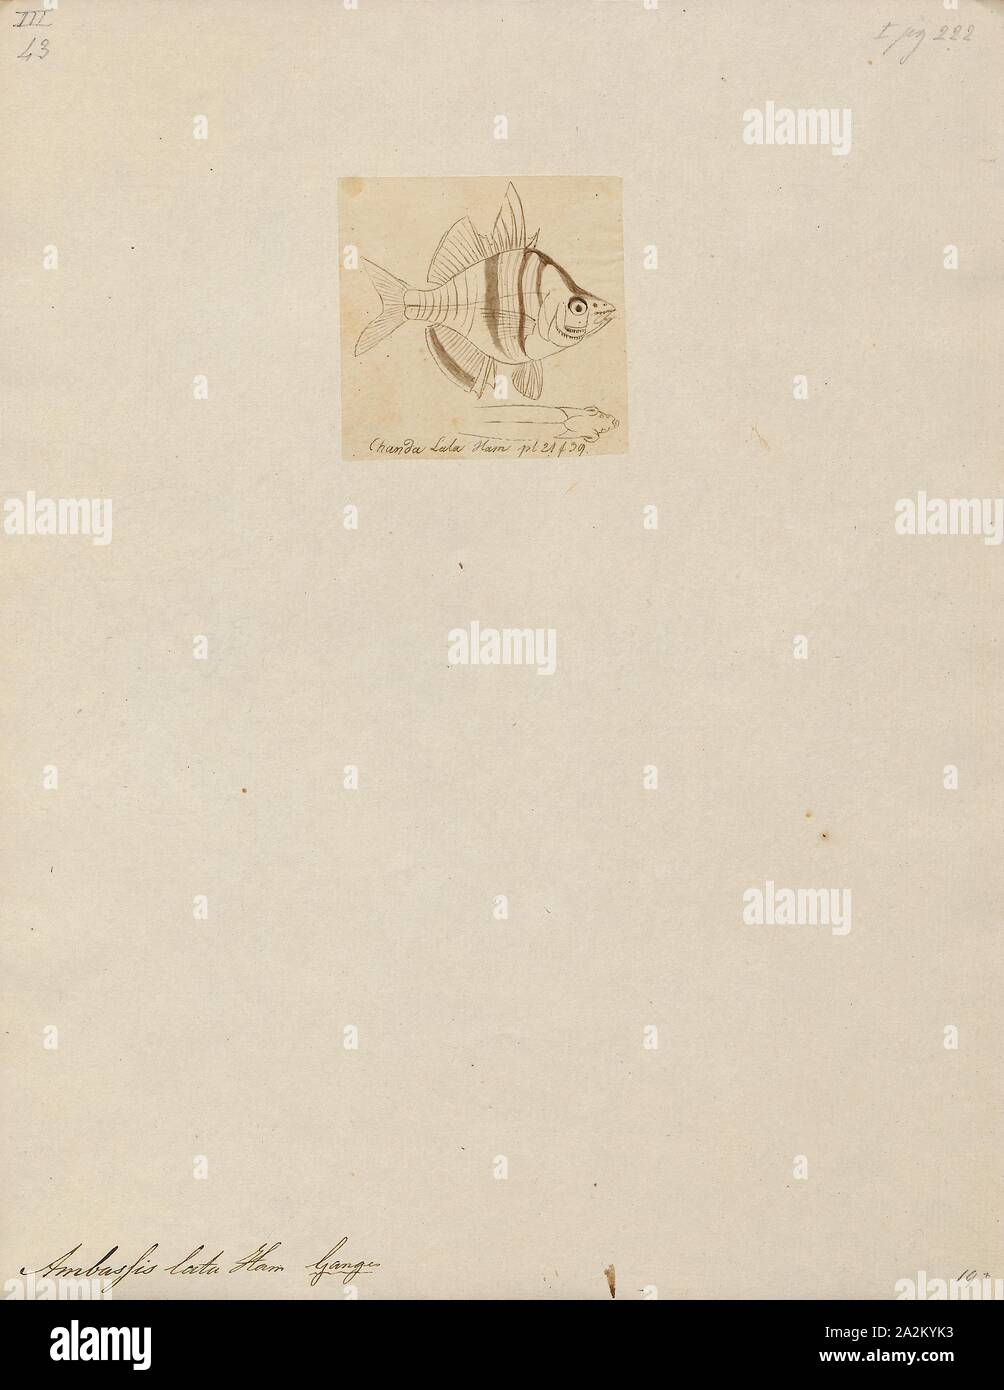 Ambassis lala, Drucken, Ambassis ist eine Gattung in der Familie der Fische, die asiatische Ambassidae glassfishes. Sie sind weit verbreitet in der indopazifischen Region gefunden, mit Arten, die in frischen, Brackwasser und küstennahen Seegewässern., 1807-1822 Stockfoto